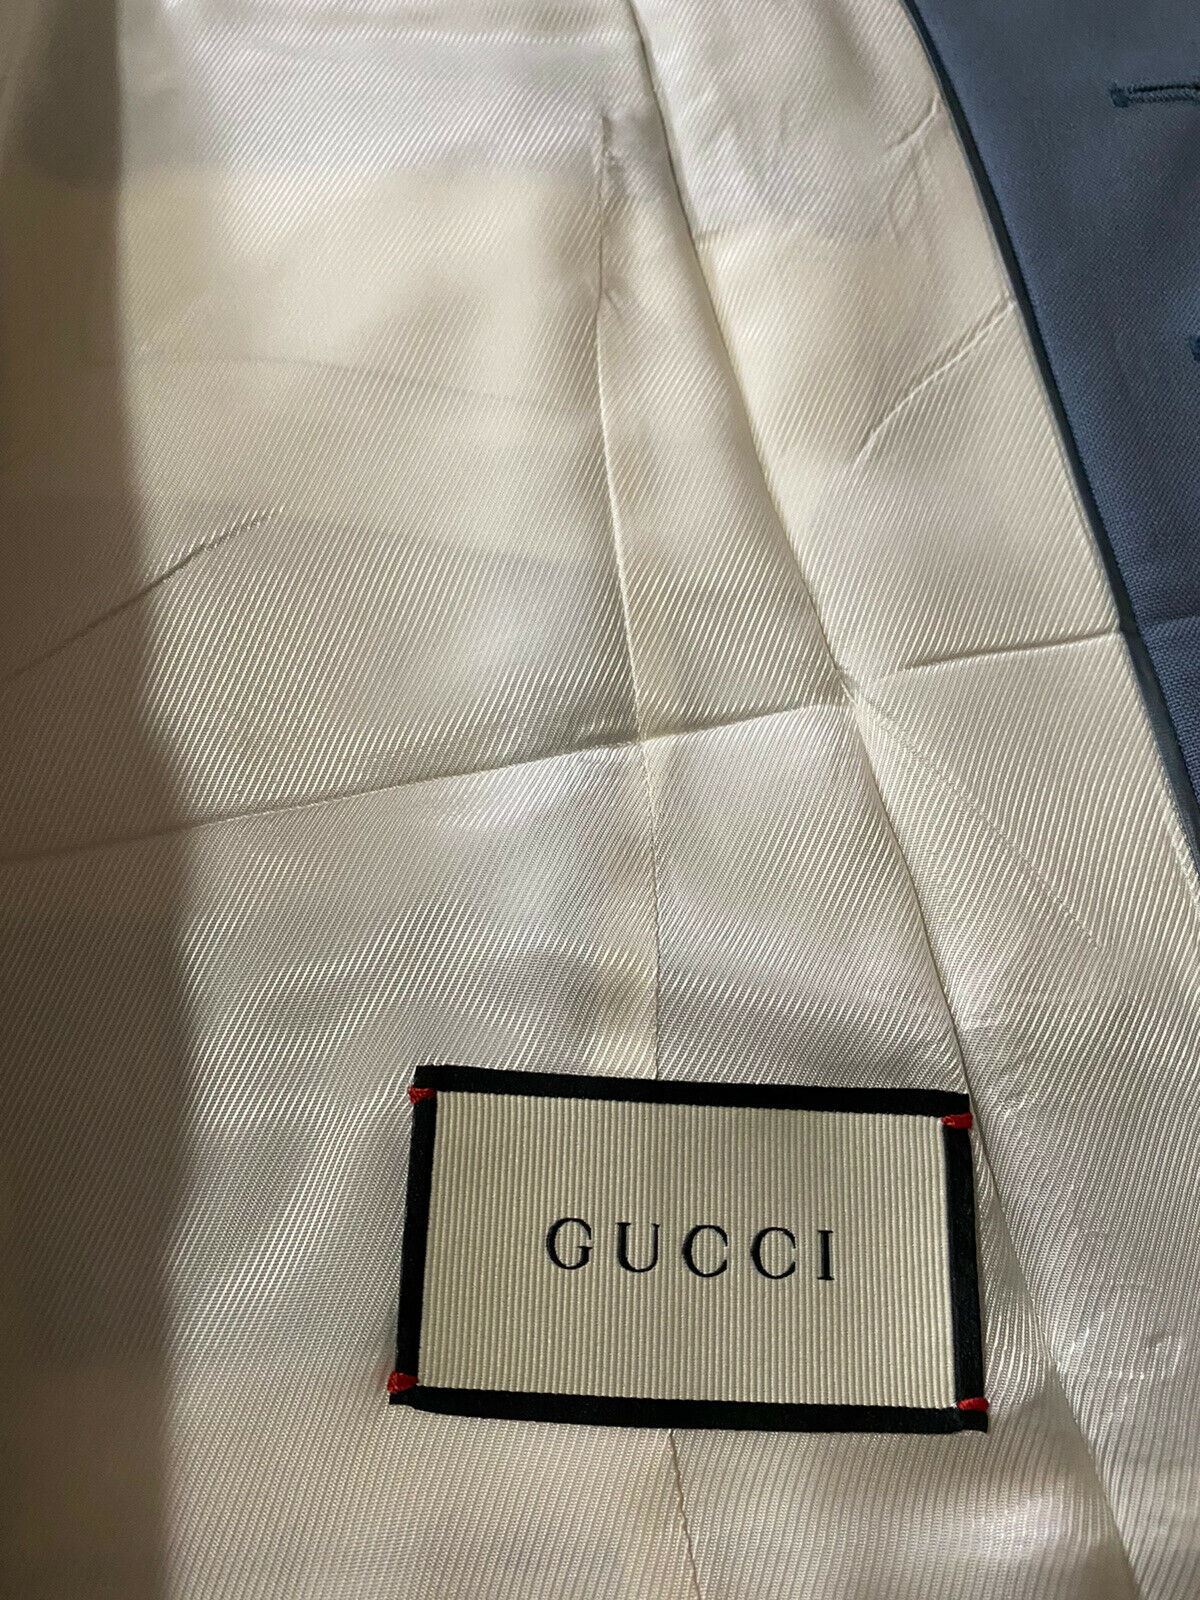 New $1520 Gucci Men Wool/Viscose Vest Gilet Blue 40 US ( 50 Eu ) Italy